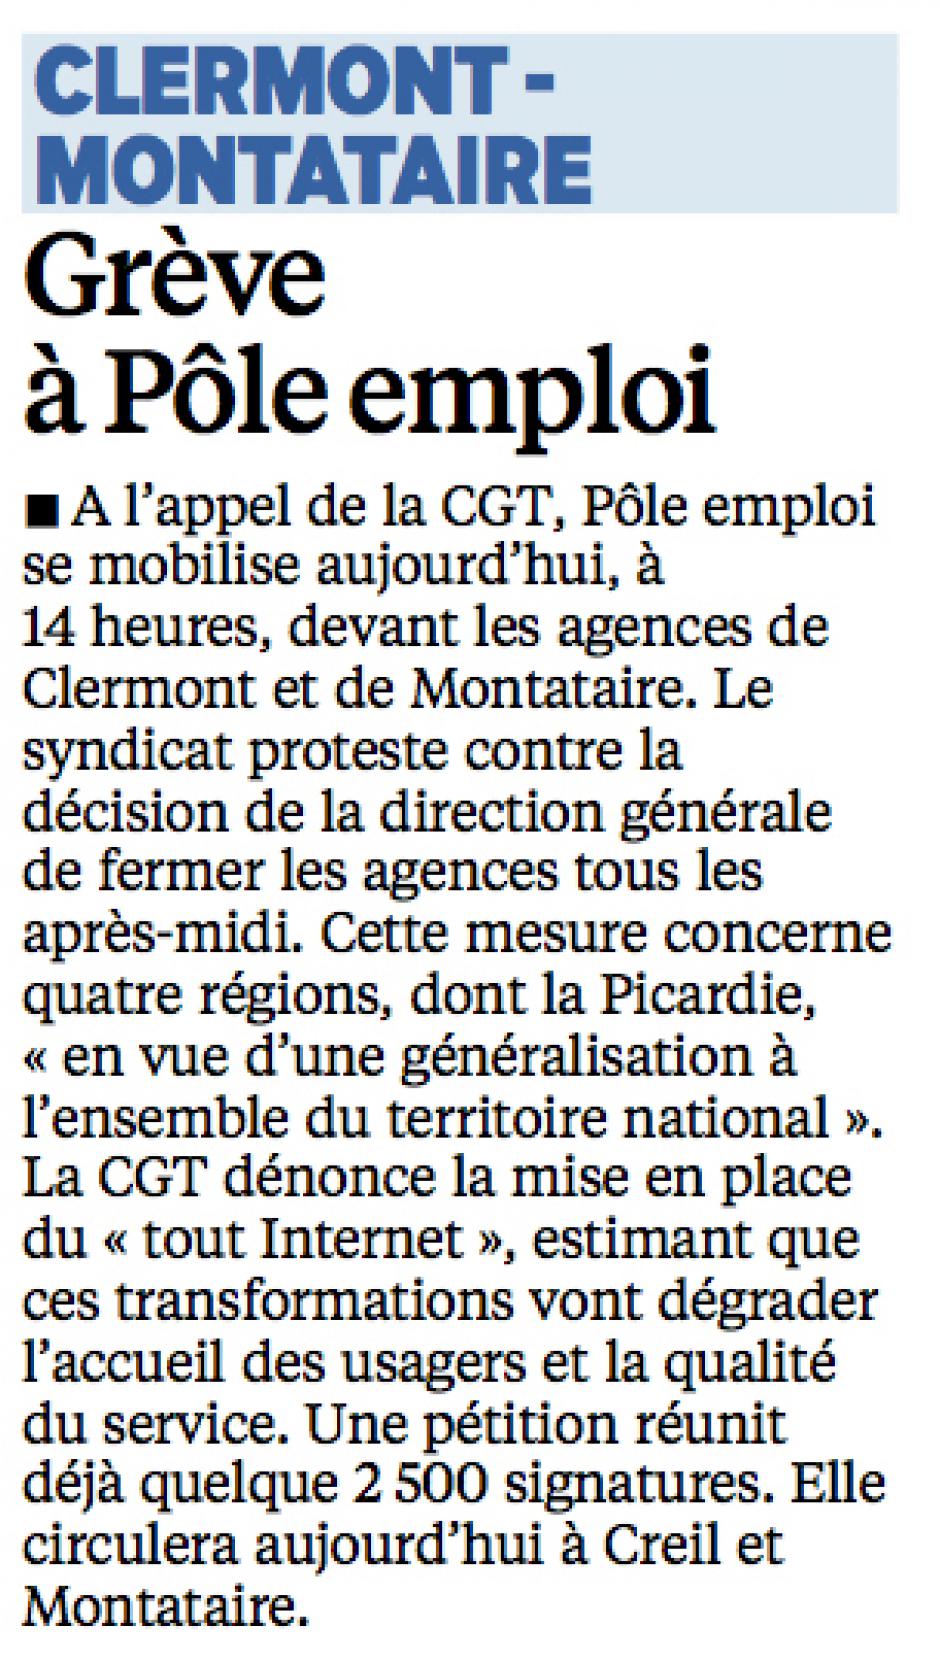 20151022-LeP-Clermont-Montataire-Grève à Pôle emploi